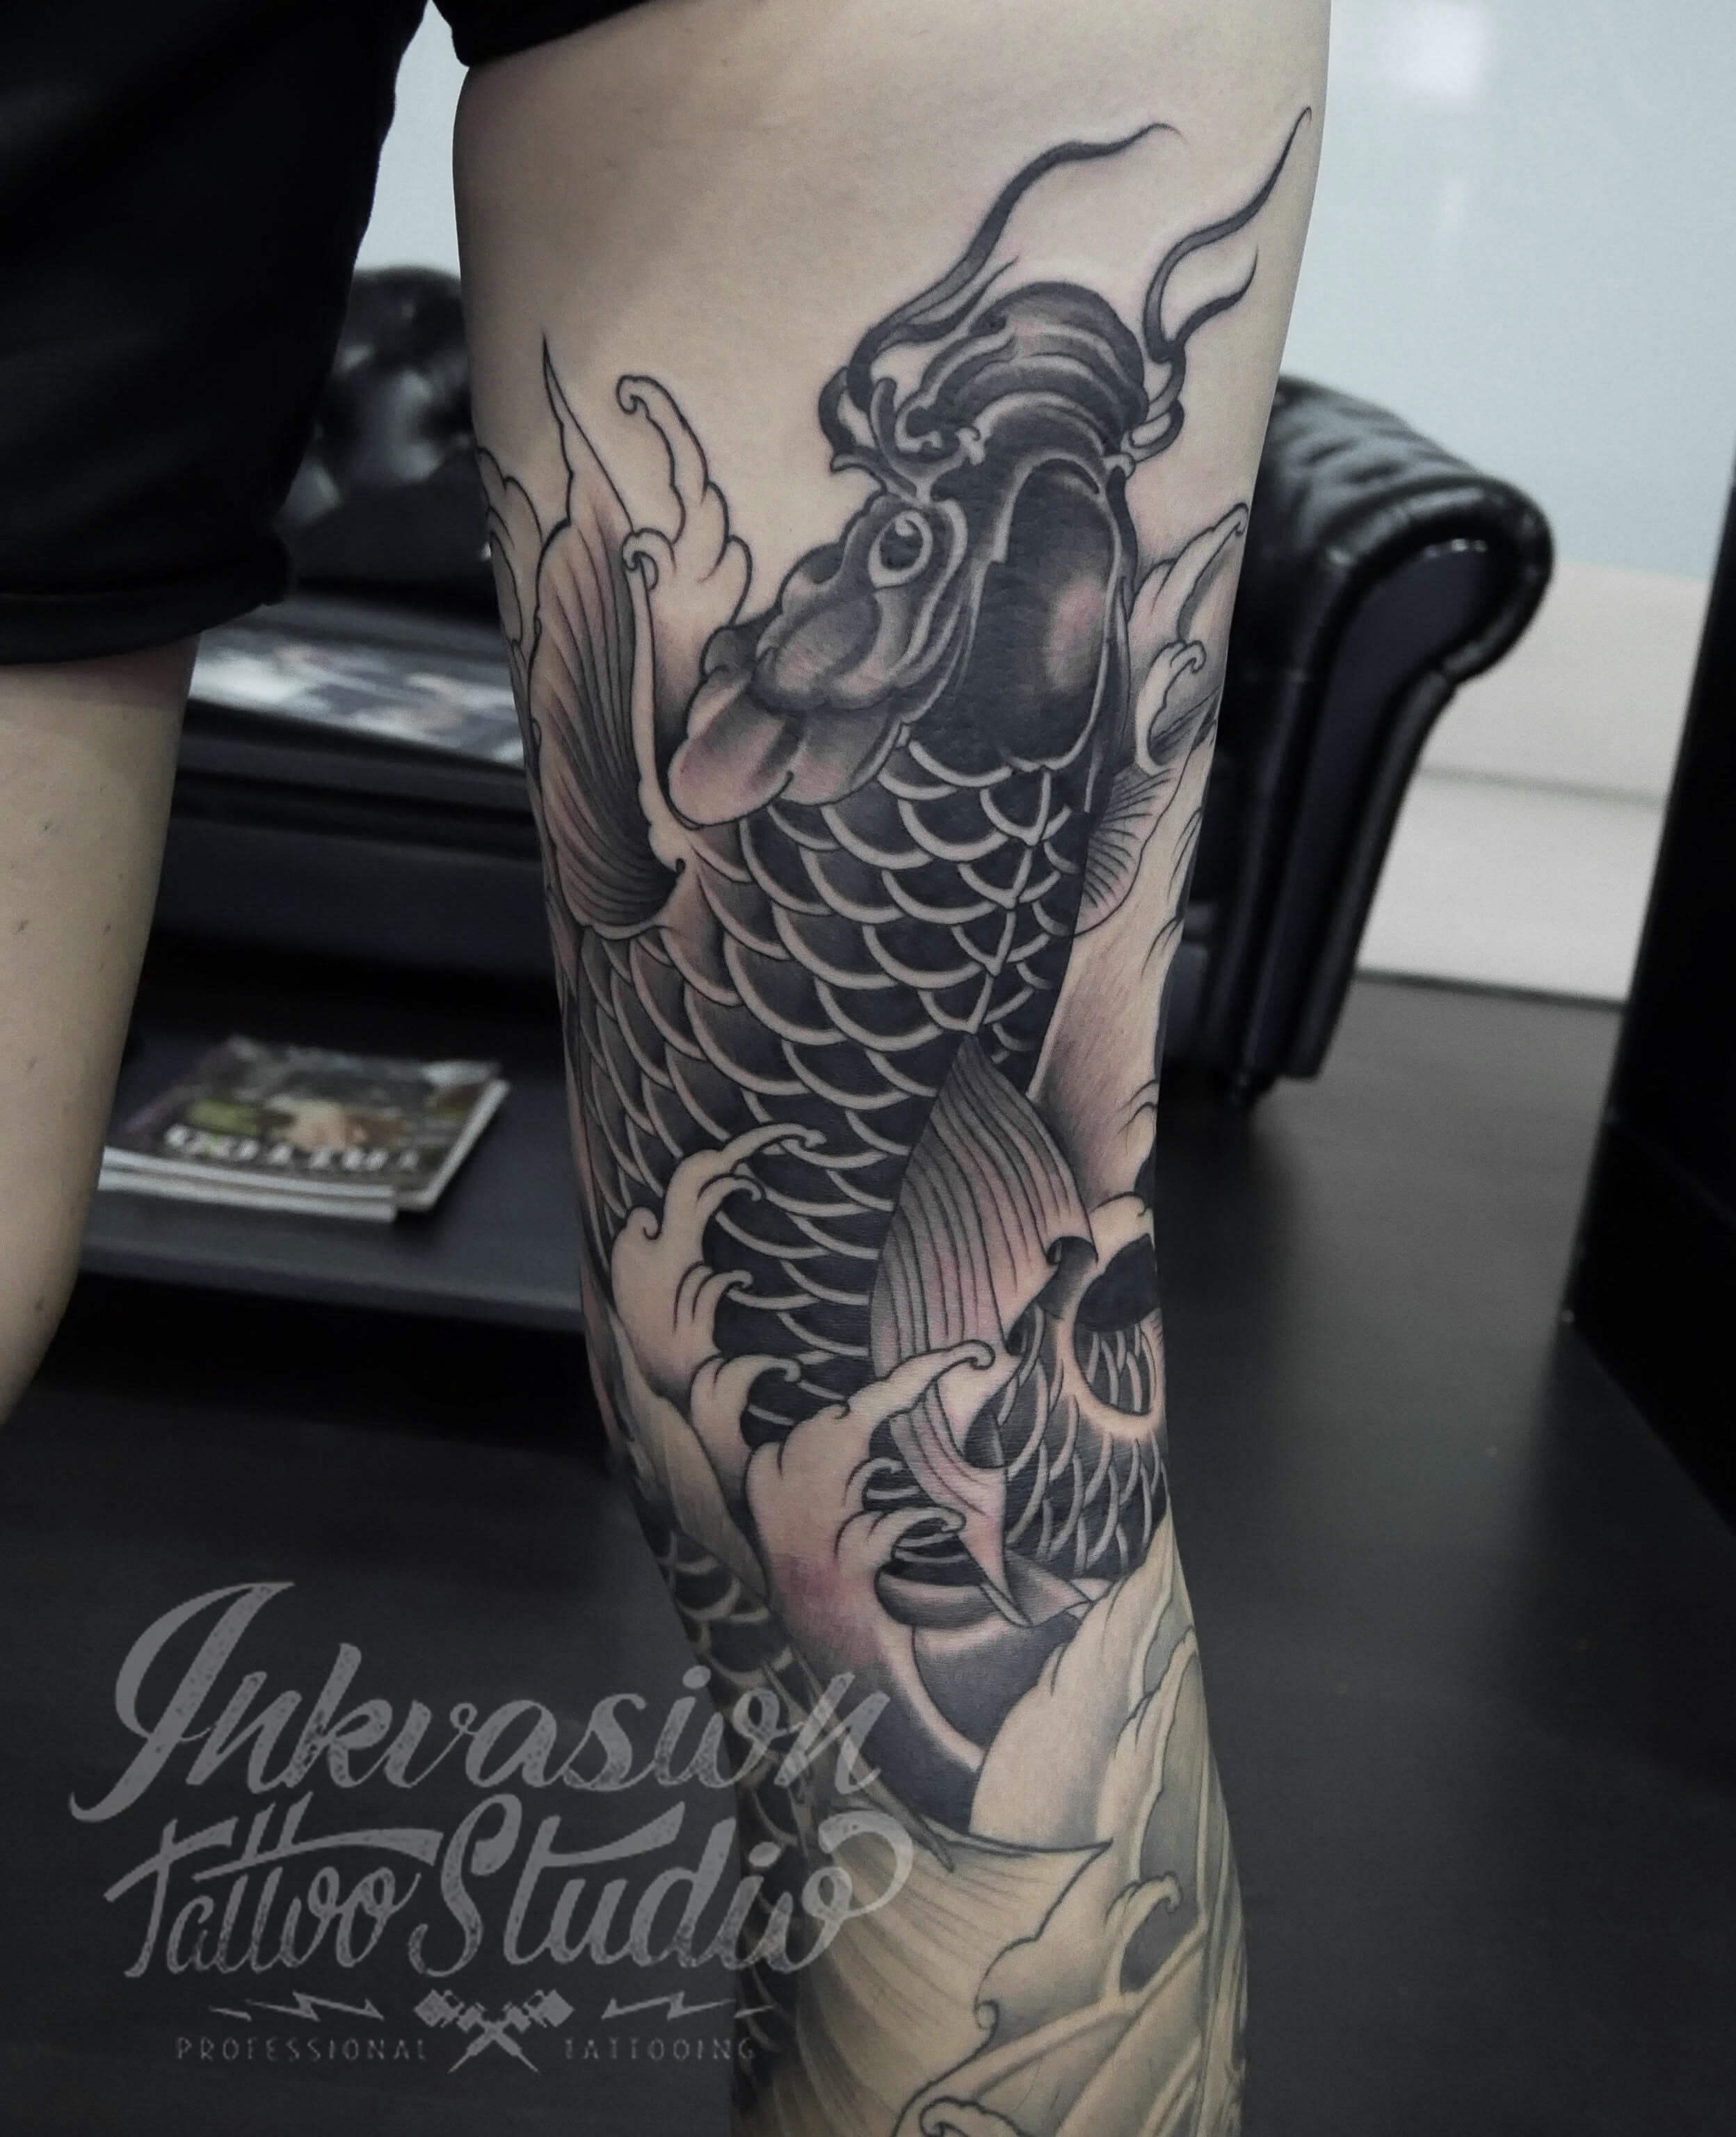 Kuro Sumi Tattoo Ink - Full Leg tattoo by our pro artist @jktattoony 🔥  #kurosumitattooink #japanesetattooink #japanesestyletattoo  #zhangpogreywashshadingset #kurosumizhangpogreywashshadingset #tattoo # tattoos #tattoostyle #tattoomodel #tattooshop ...